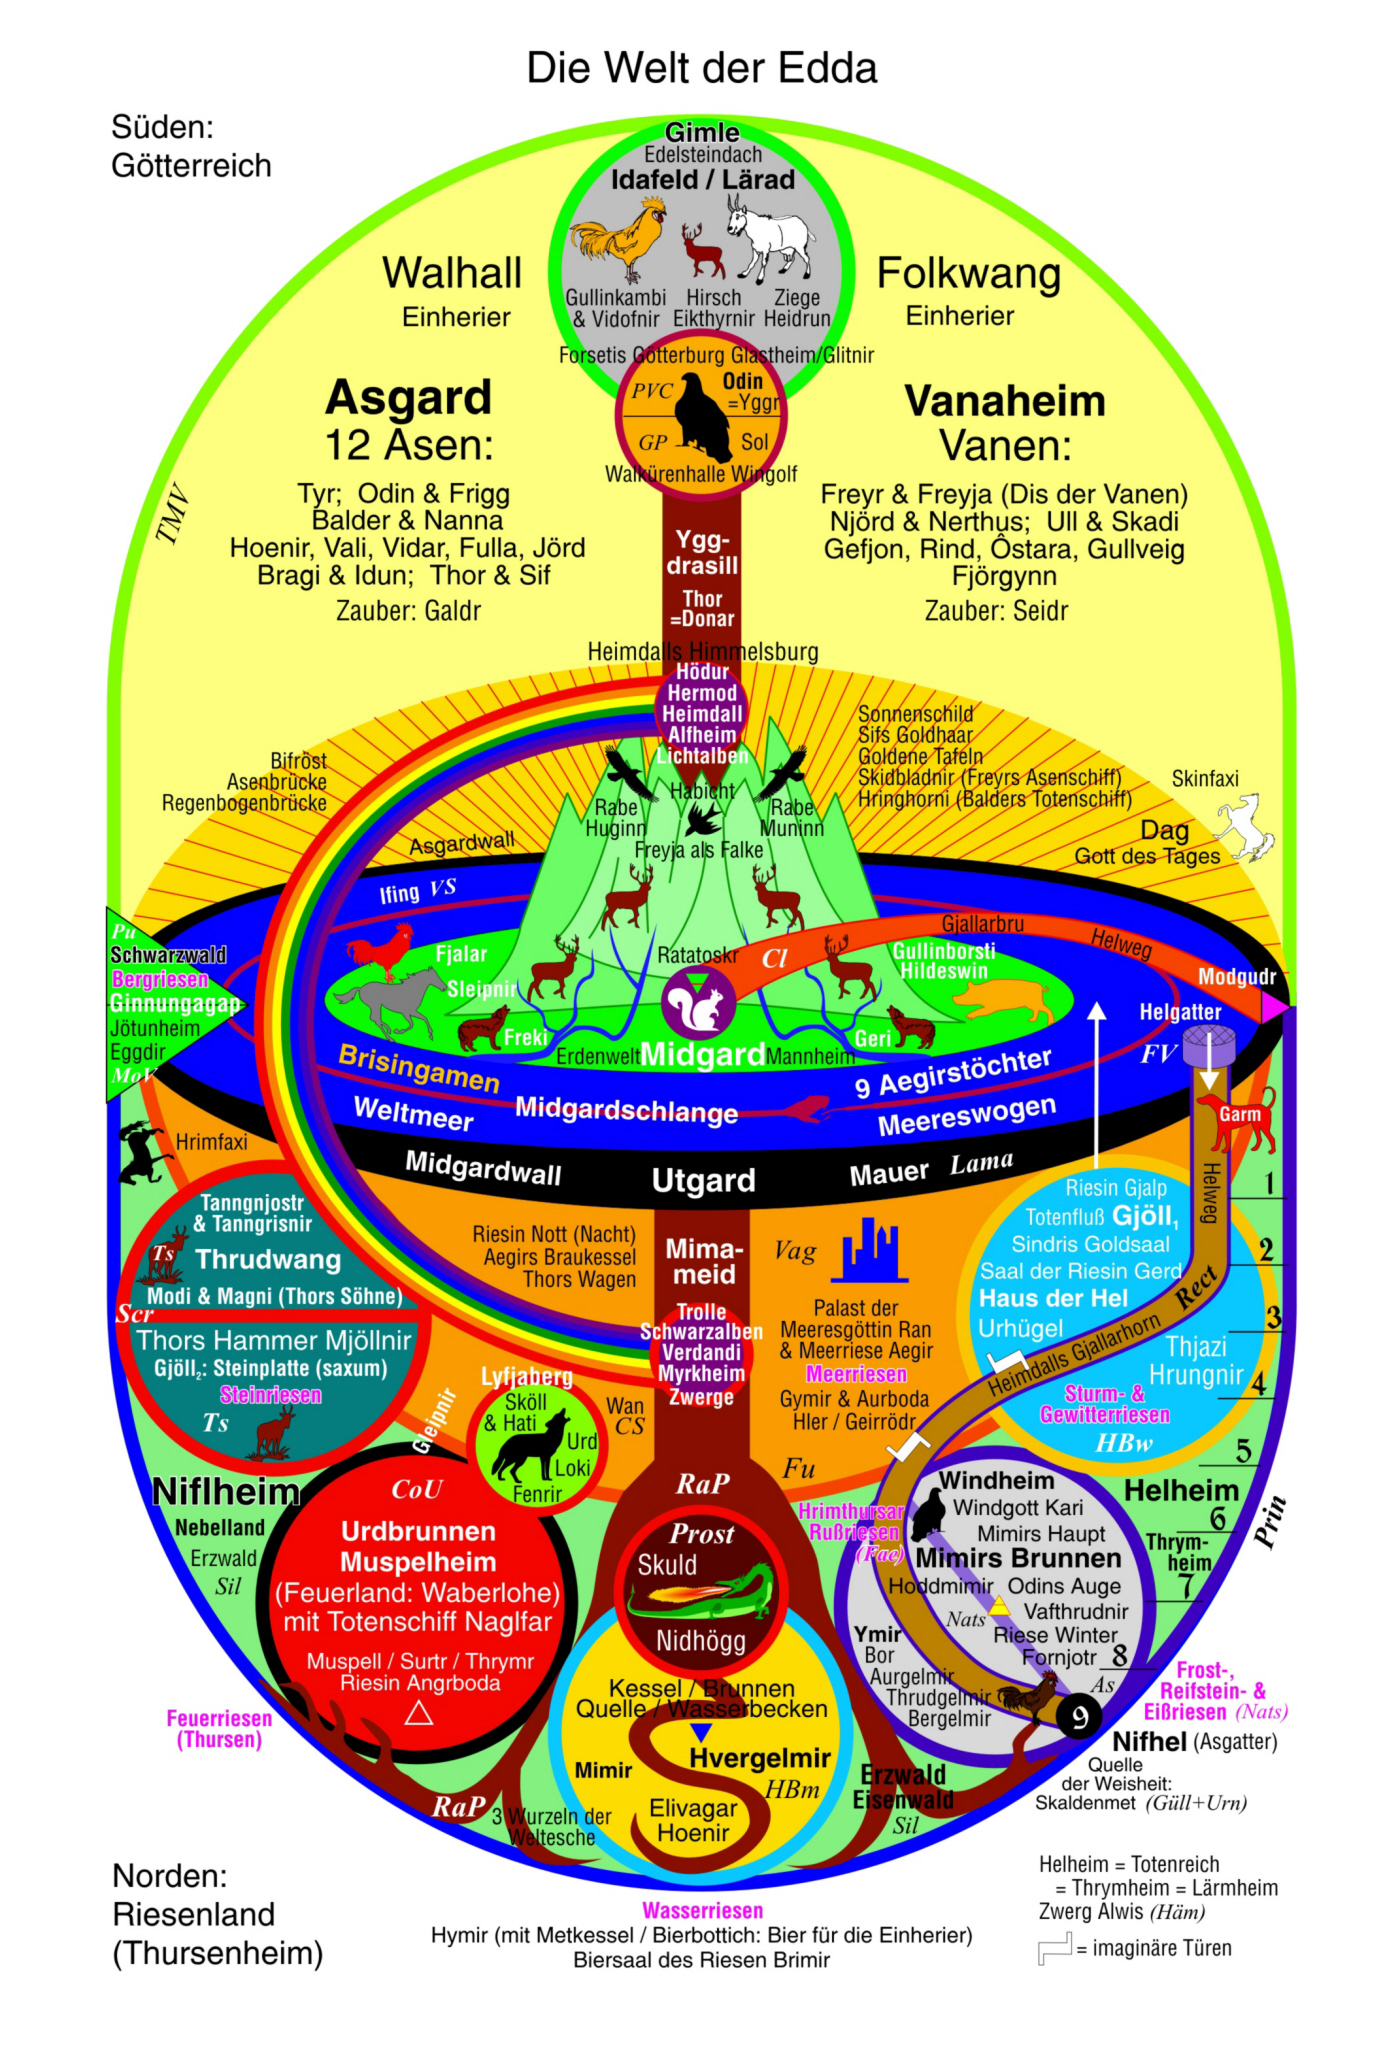 Die Weltesche Yggdrasill: Das Weltbild der Edda